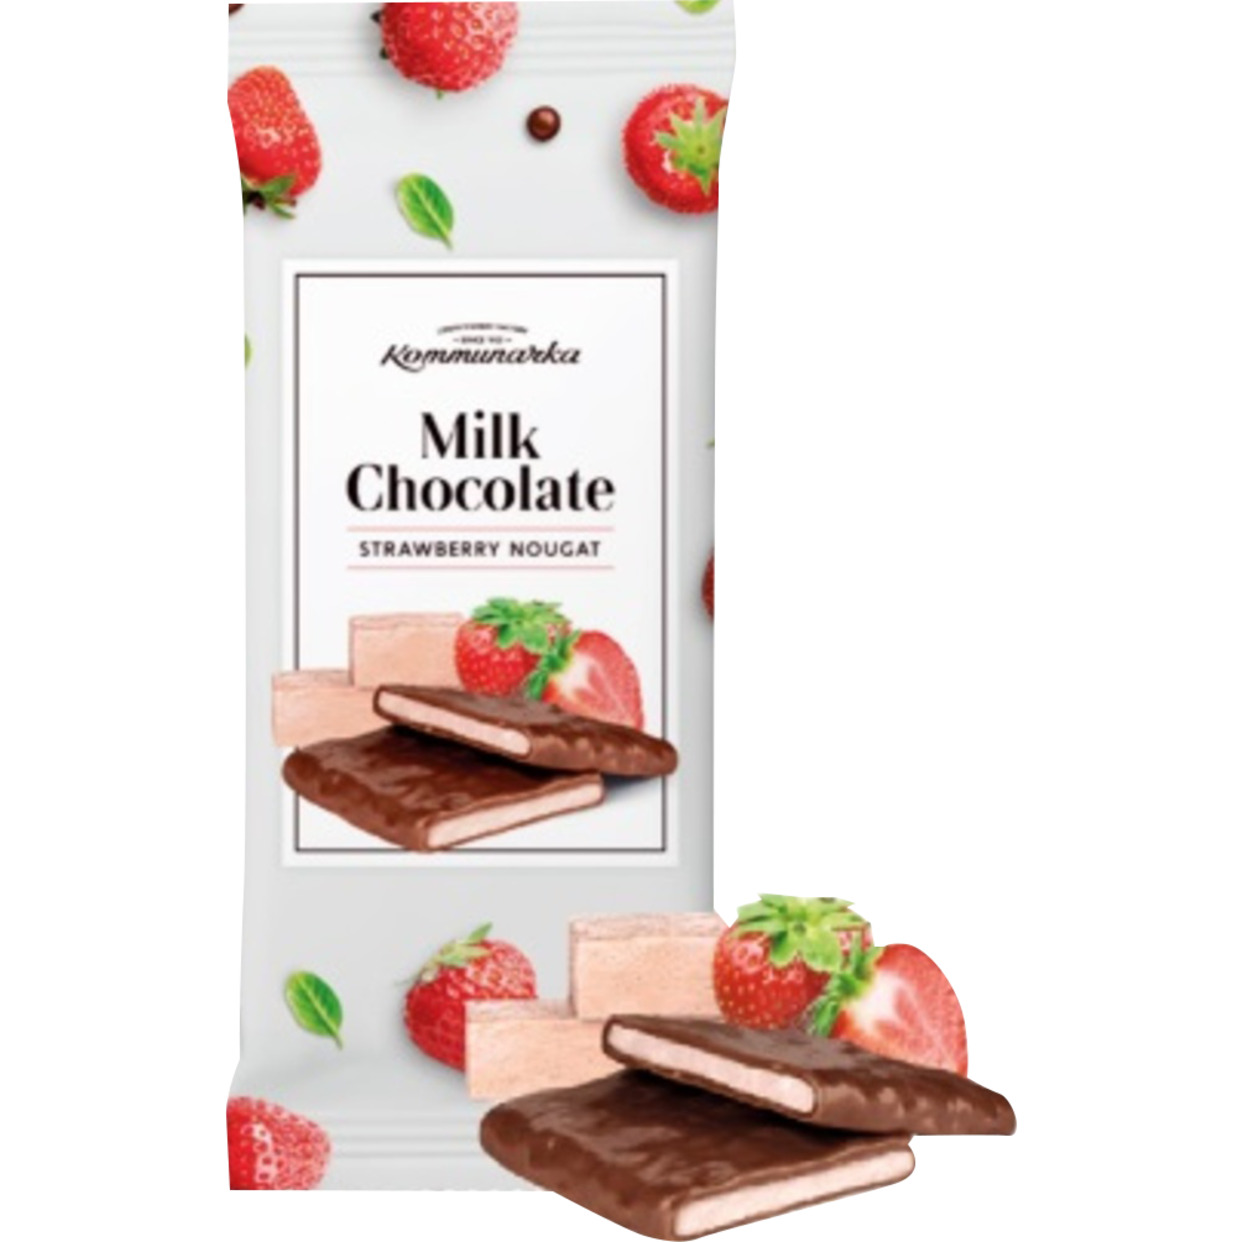 Milk Chocolate strawberry nougat Шоколад молочный с клубничной нугой, 80г по акции в Пятерочке